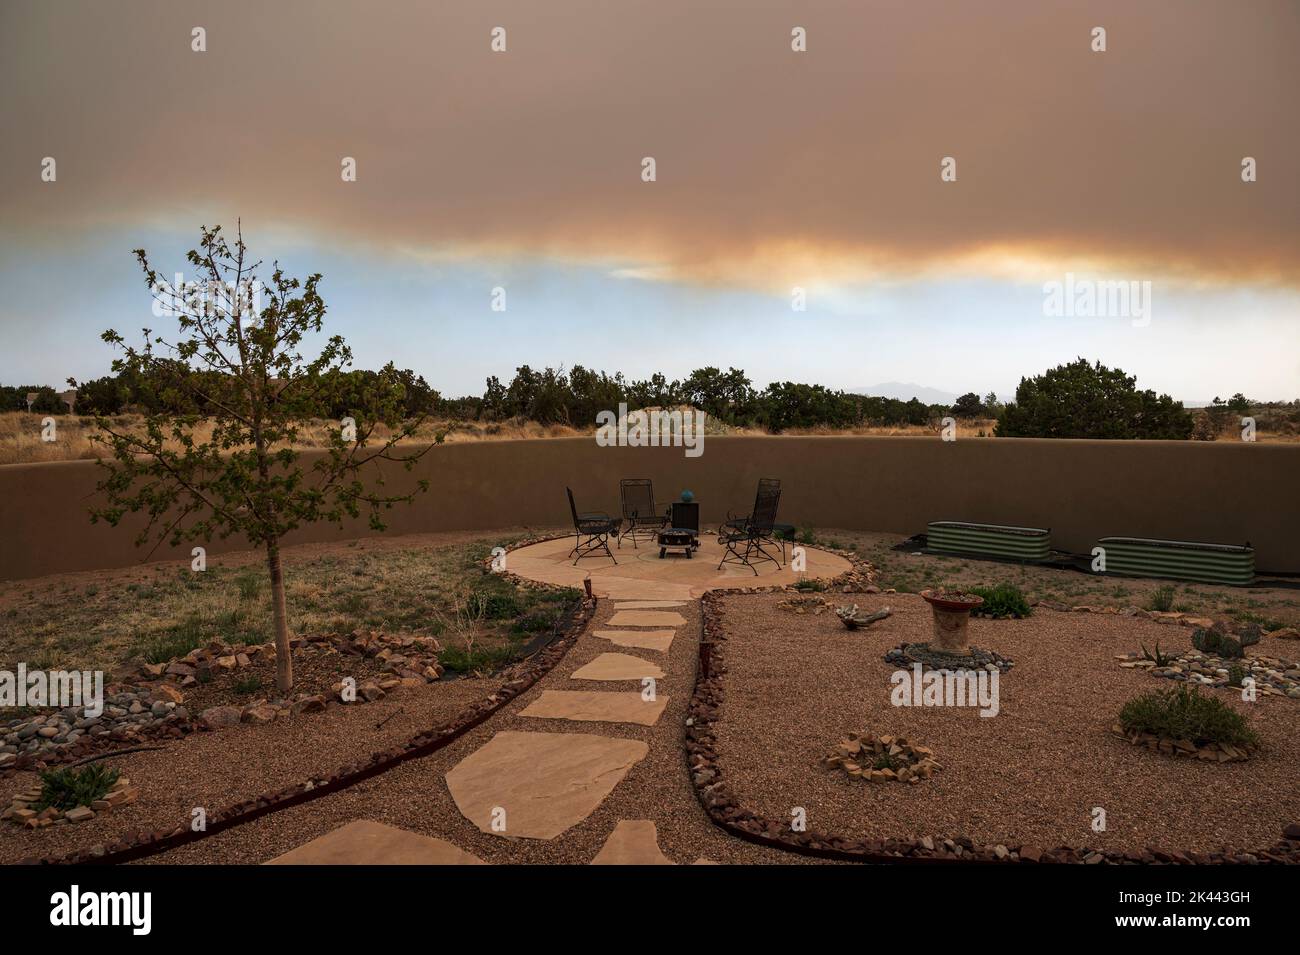 USA, New Mexico, Santa Fe, Garten in Wüstenlandschaft mit Rauchwolken bei Sonnenuntergang Stockfoto